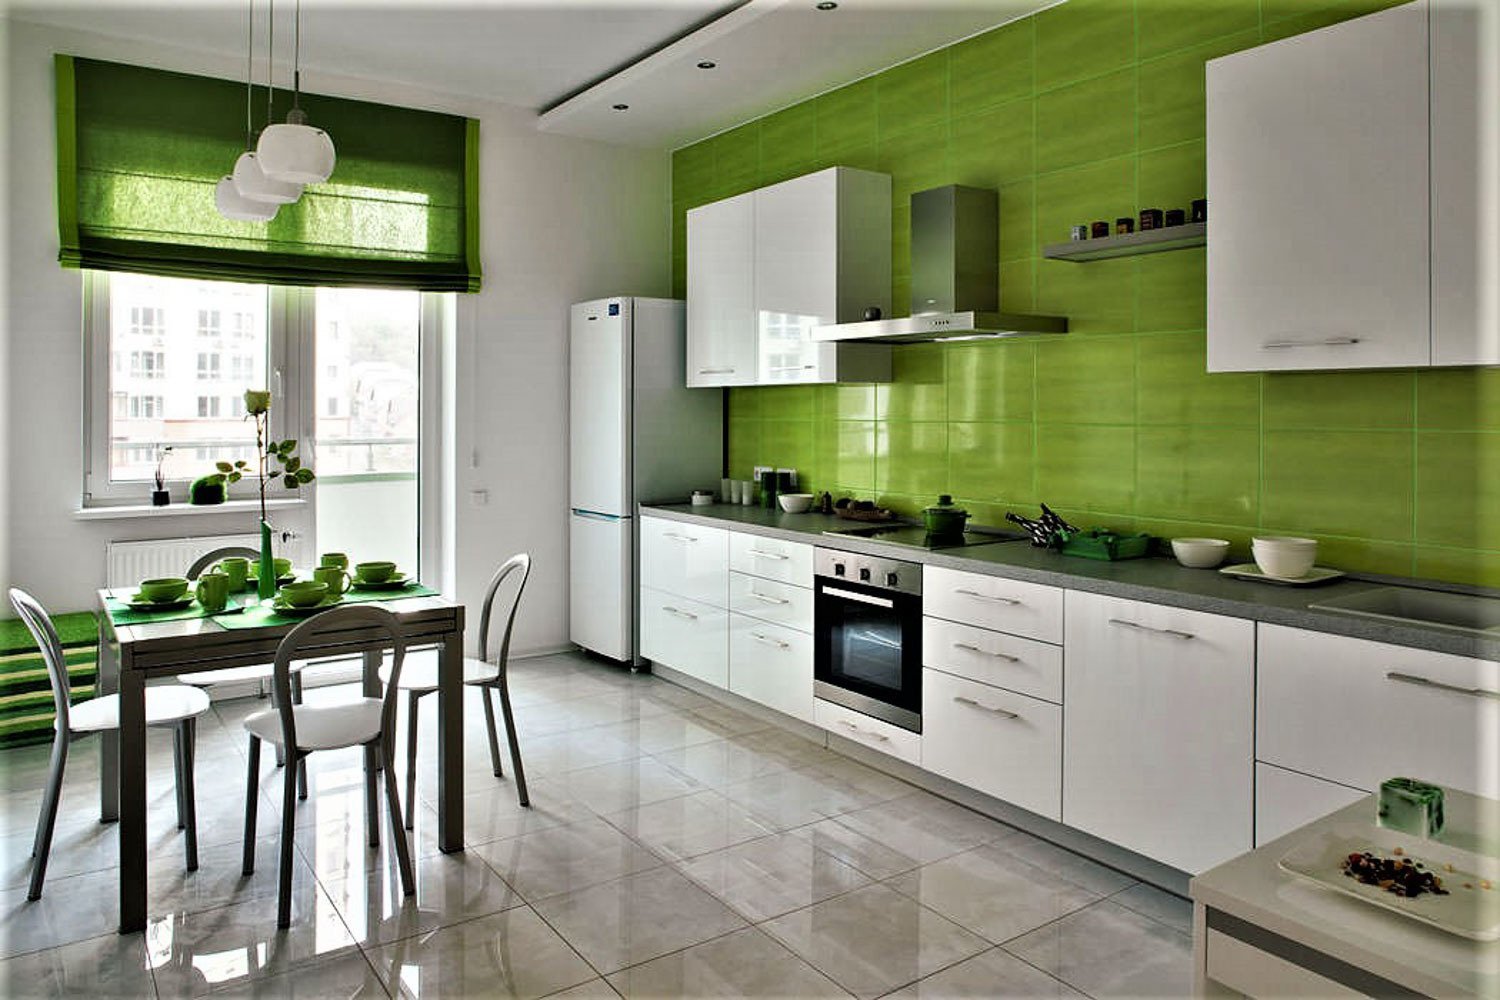 Бело-зеленая кухня: идеи дизайна и отделки, 50 красивых фото